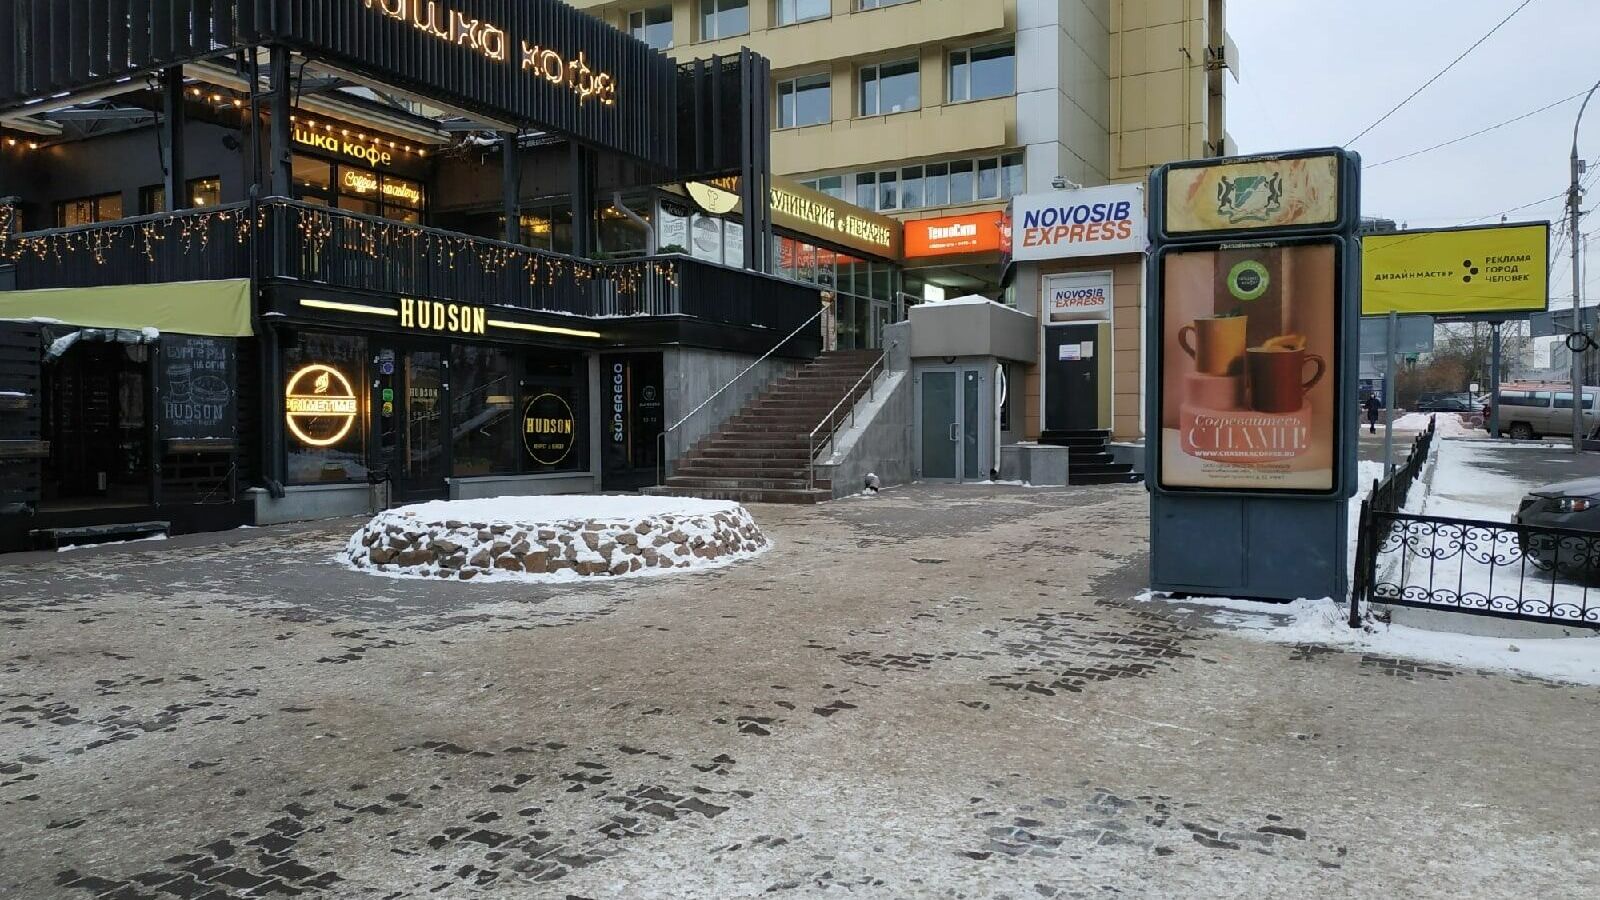 Елочный базар по адресу Новосибирск, Ленина, 12 не открылся 1 декабря